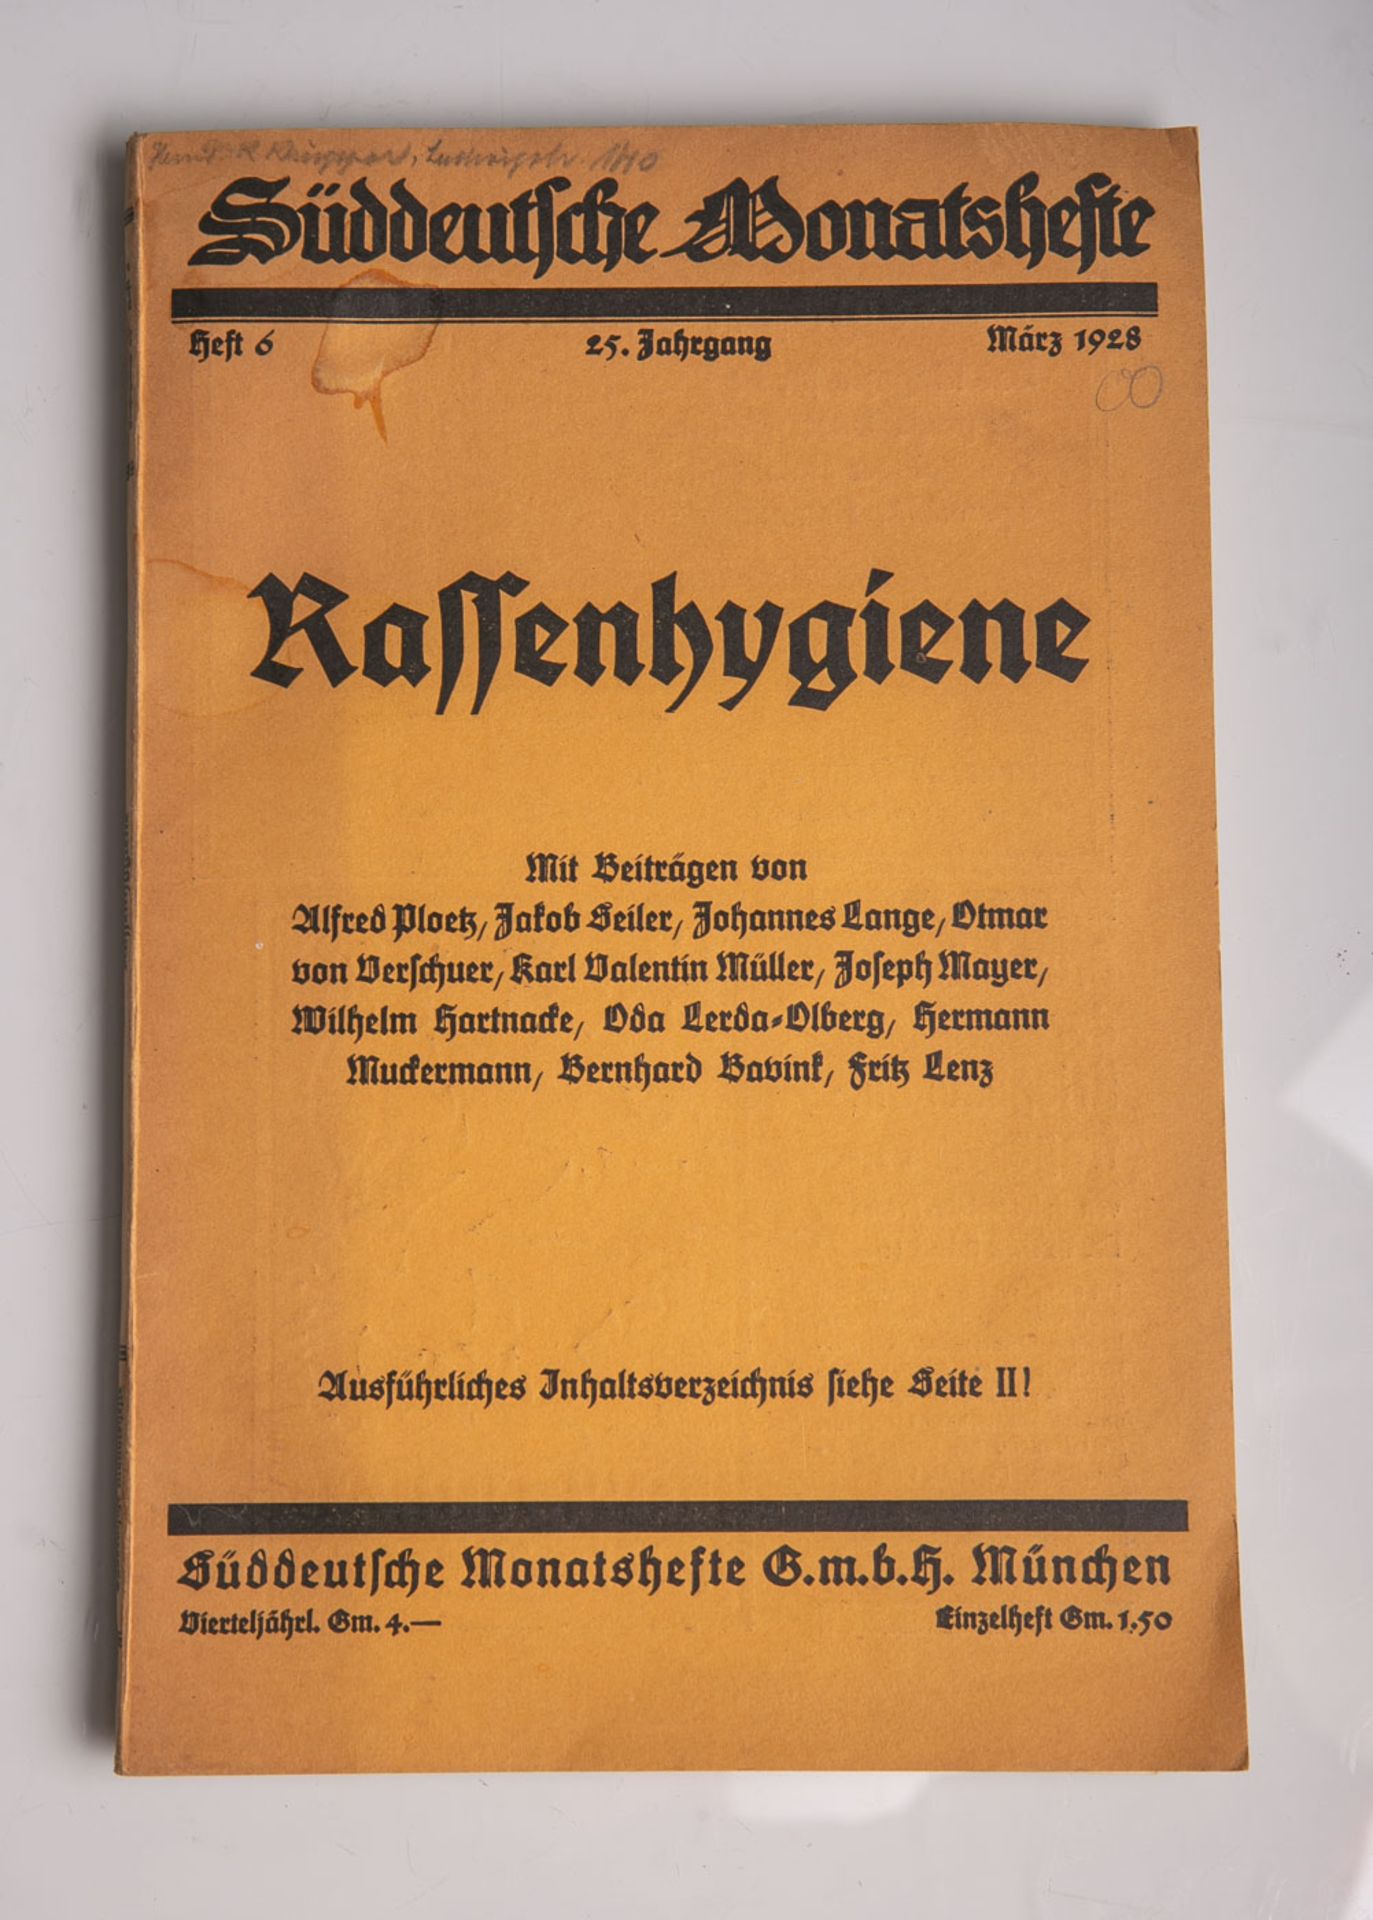 "Rassenhygiene", Süddeutsche Monatsheft, Heft 6, 25. Jahrgang, März 1928, SüddeutscheMonatsheft G.